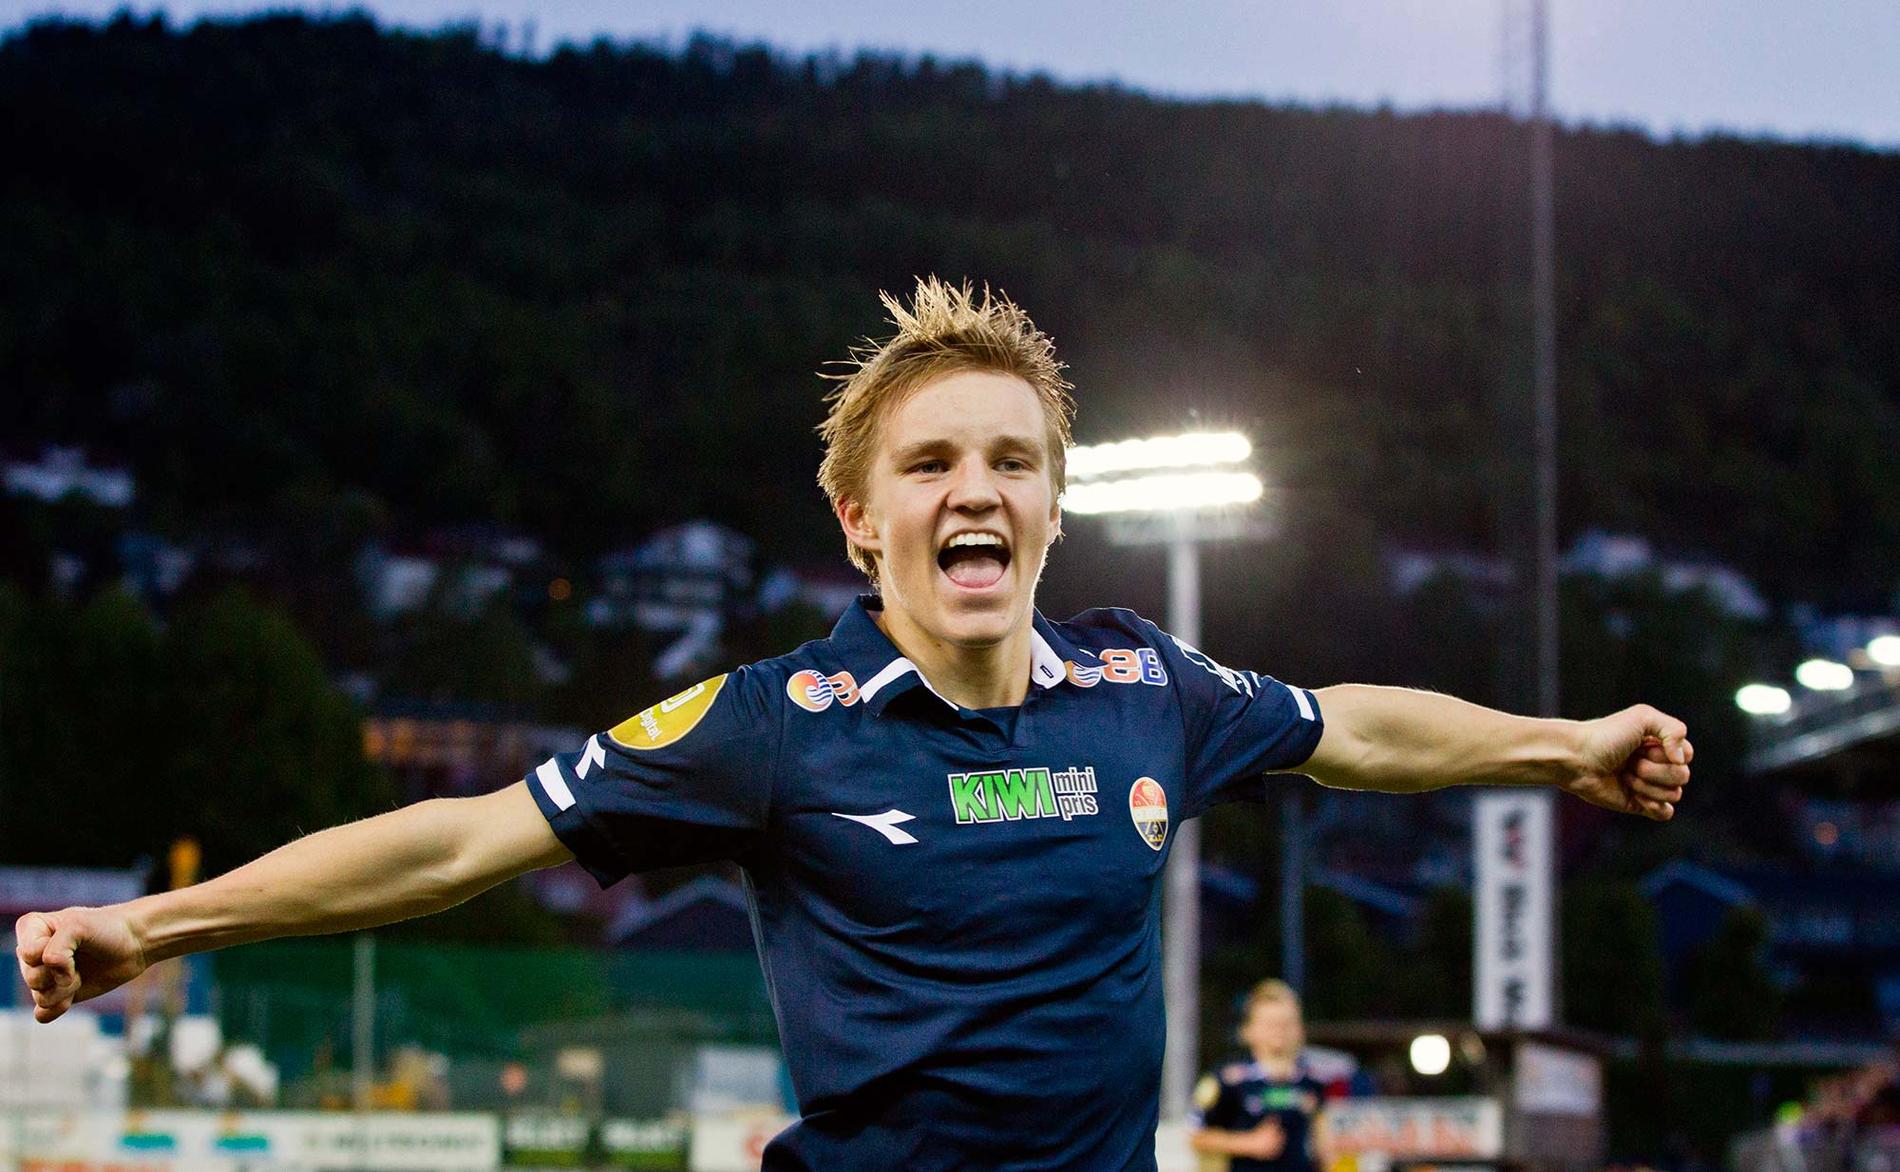 Är det dags för Norge att nå ett stort mästerskap igen? Spelbolagen menar på att landet har skrällpotential i grupp H mot Kroatien och Italien. En av spelarna som kan göra det? Supertalangen Martin Ödegaard.